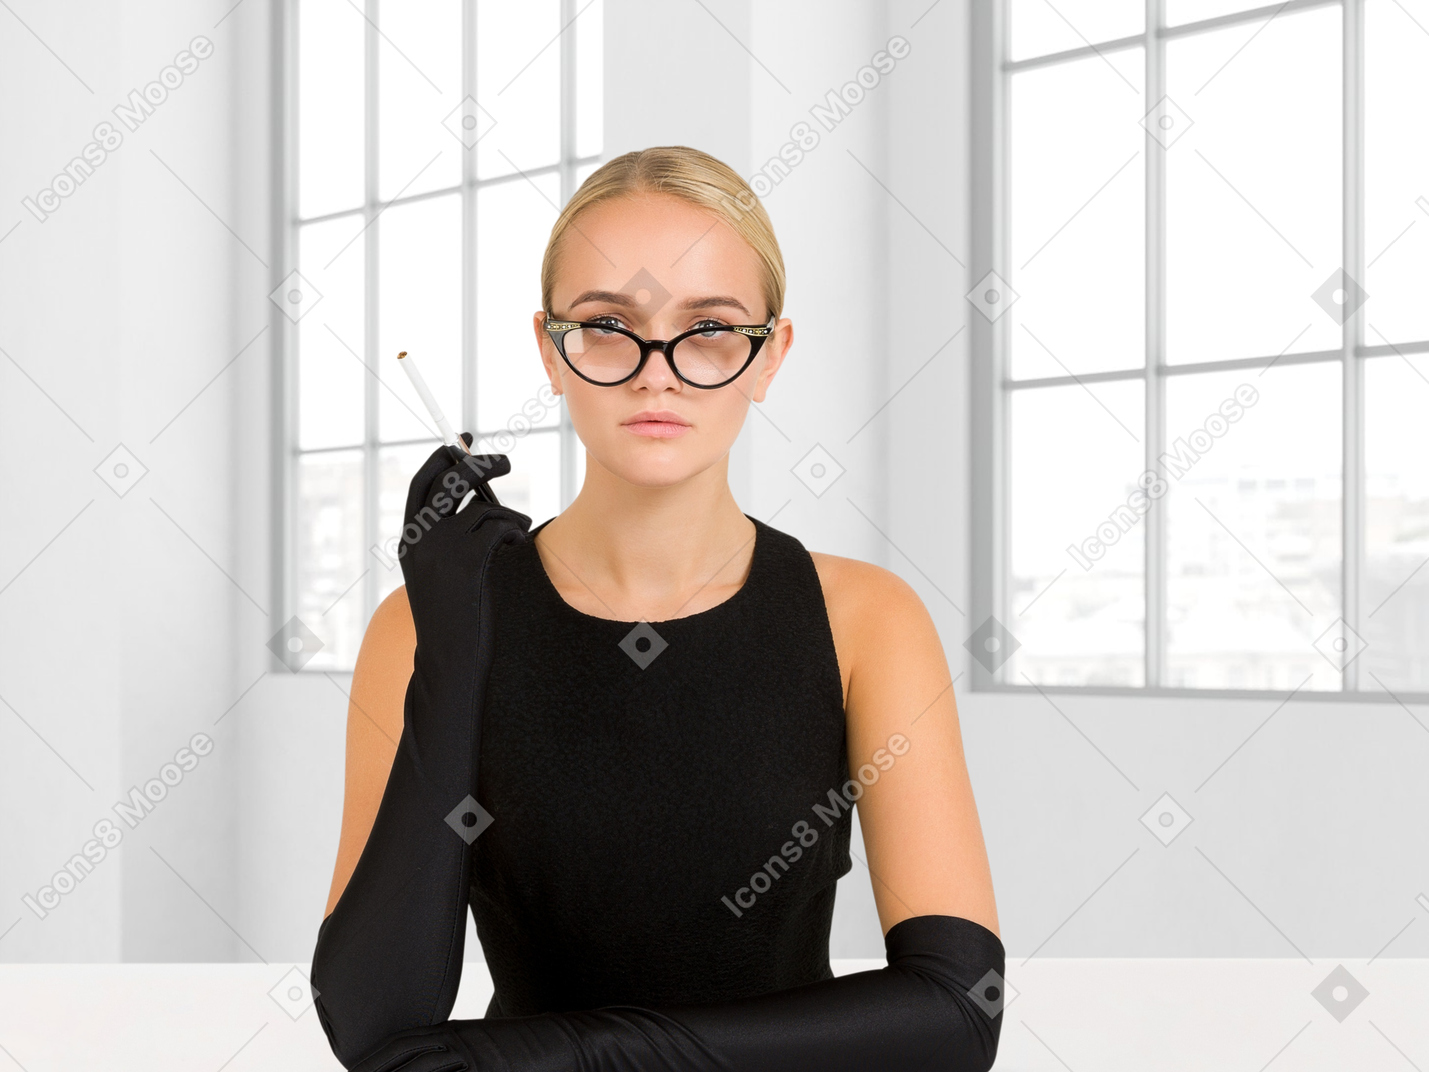 Donna dall'aspetto severo seduta e che fuma una sigaretta